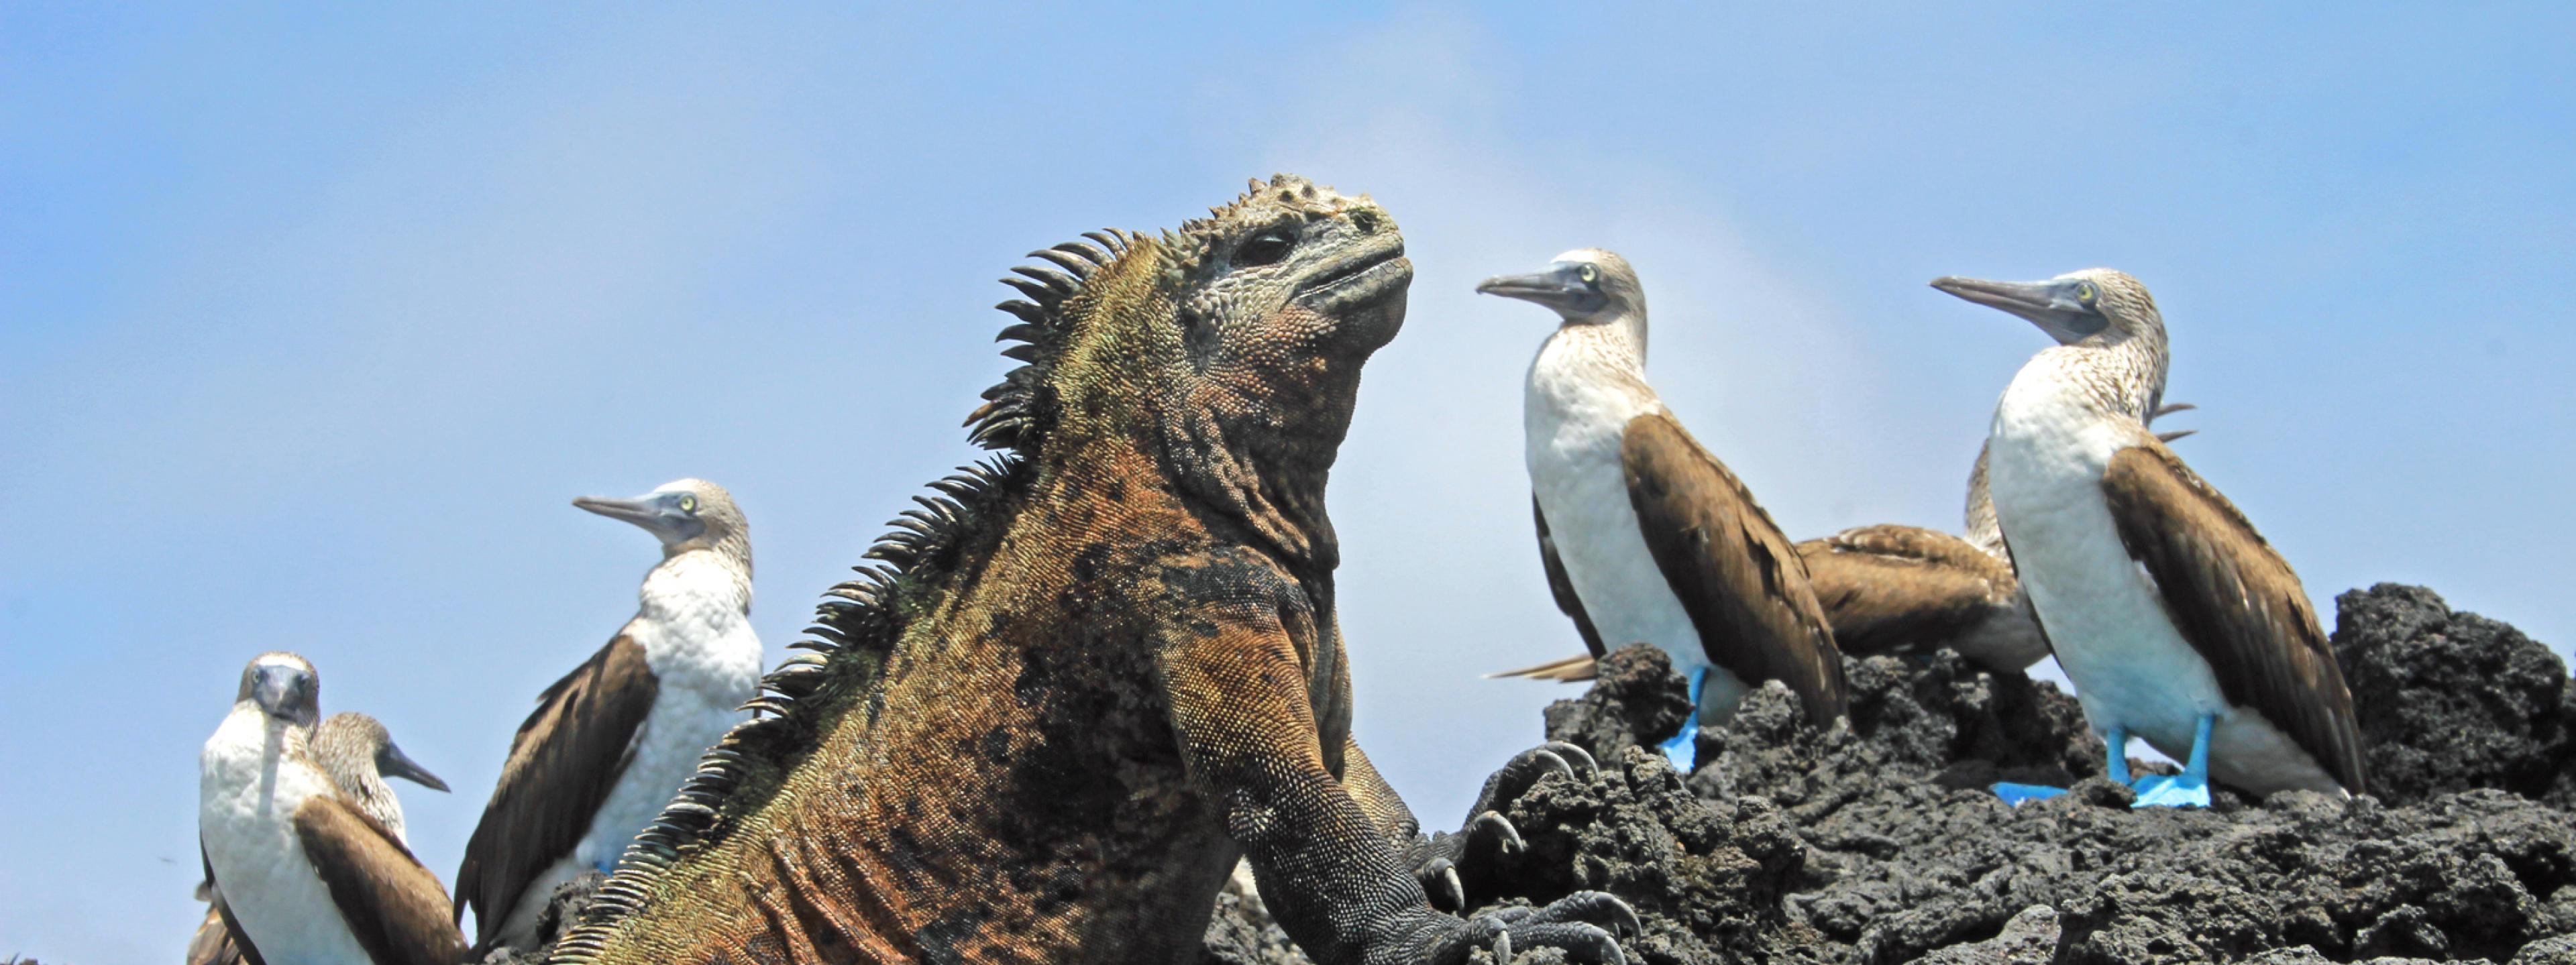 Eine graubraune Echse, ein Meeresleguan, richtet sich auf ihren Vorderfüßen auf einem grauen Lavafelsen auf. Im Hintergrund sitzen Vögel mit weißer Brust, braunen Flügeln, langen Schnäbeln und blauen Füßen. Es sind Blaufußtölpel., Ecuador. Galapagos, Ecuador